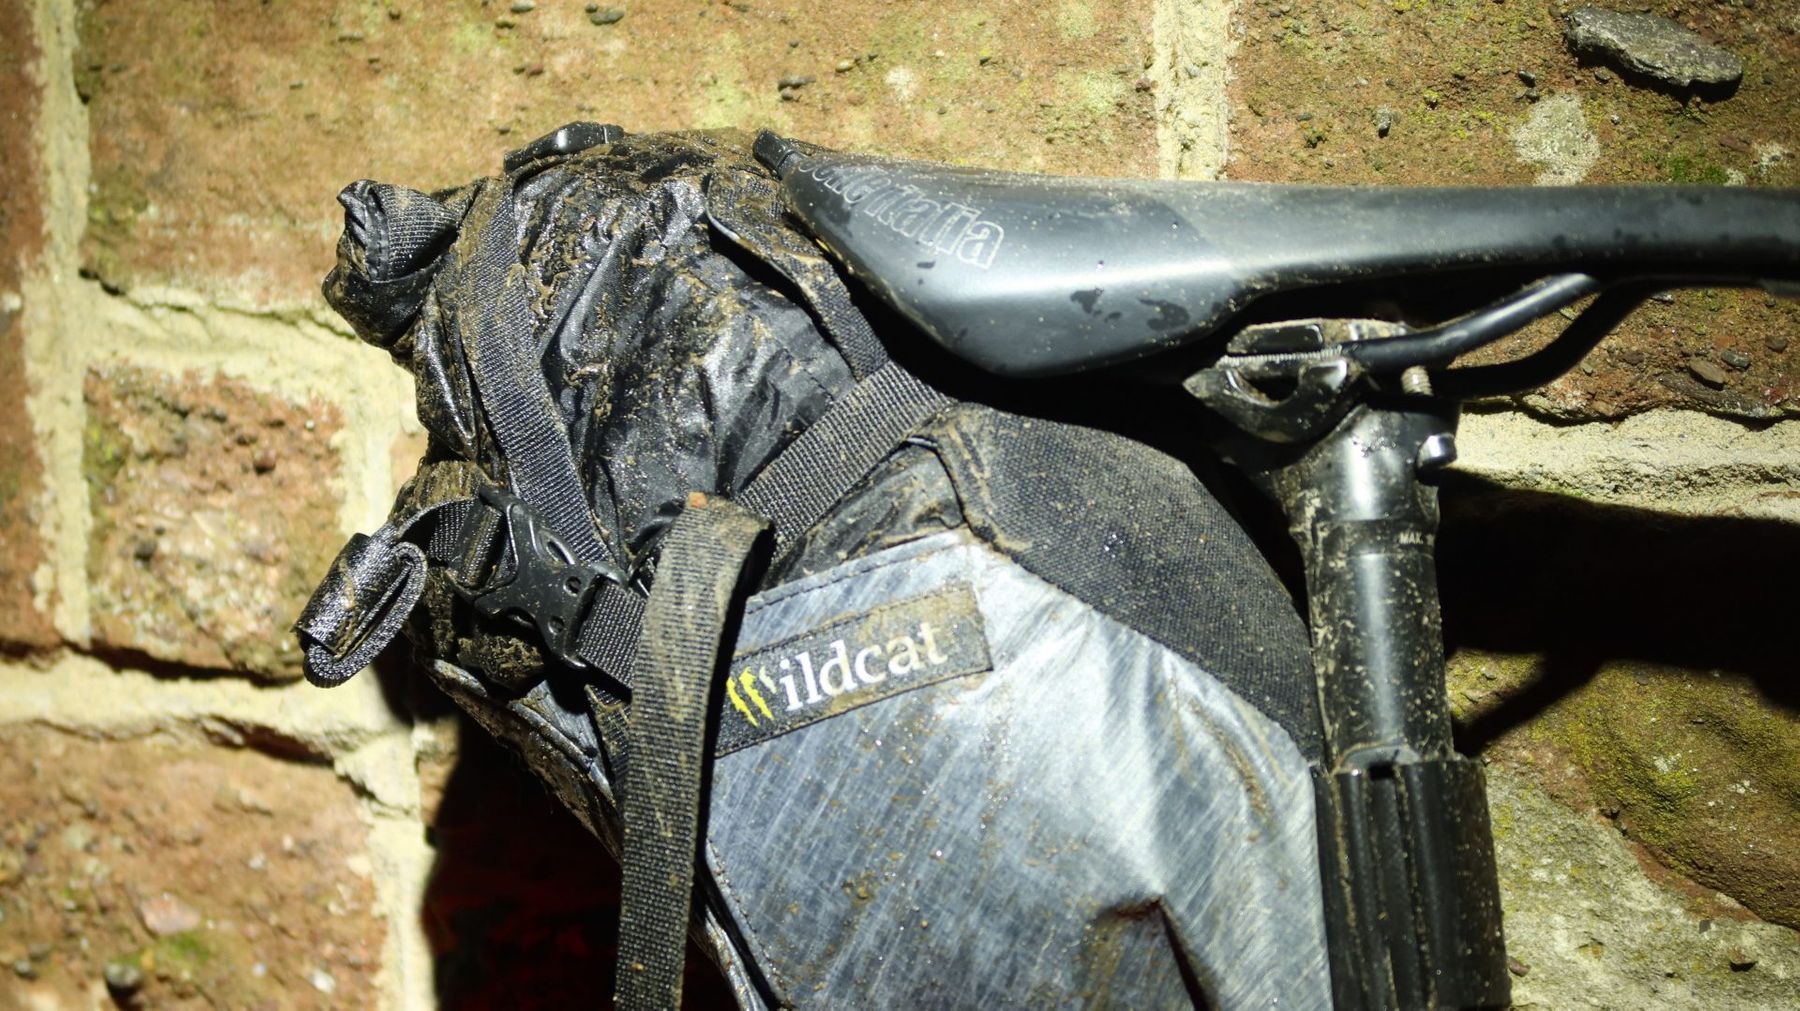 wildcat bike bags